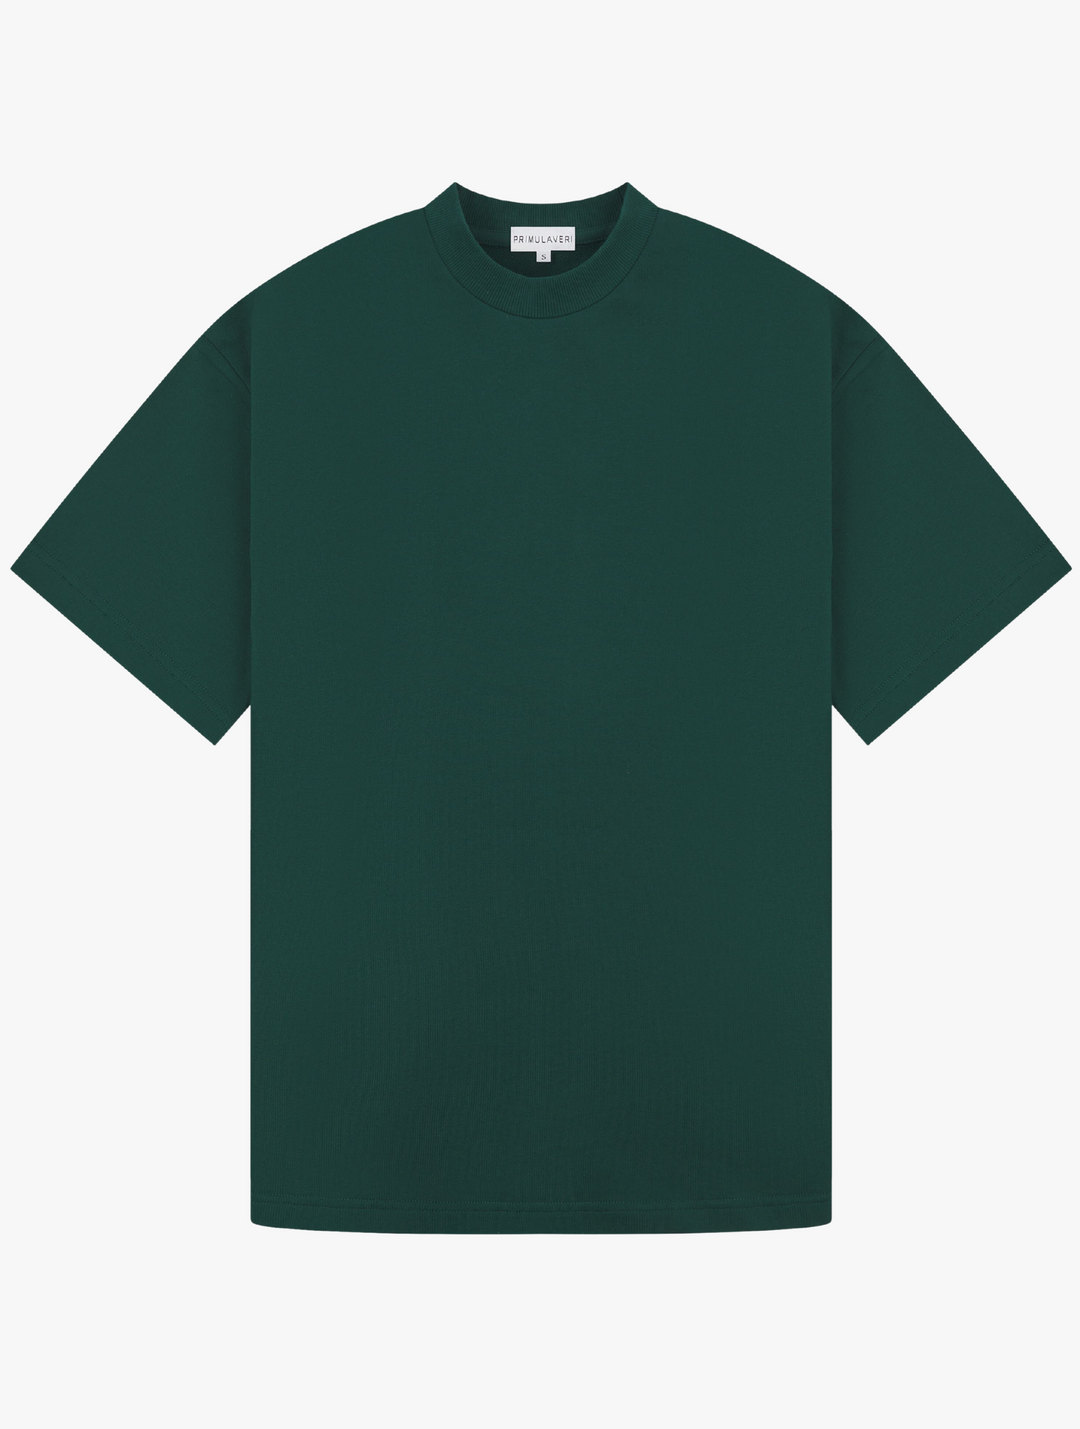 Heavyweight Oversized T Shirt - Teal Green